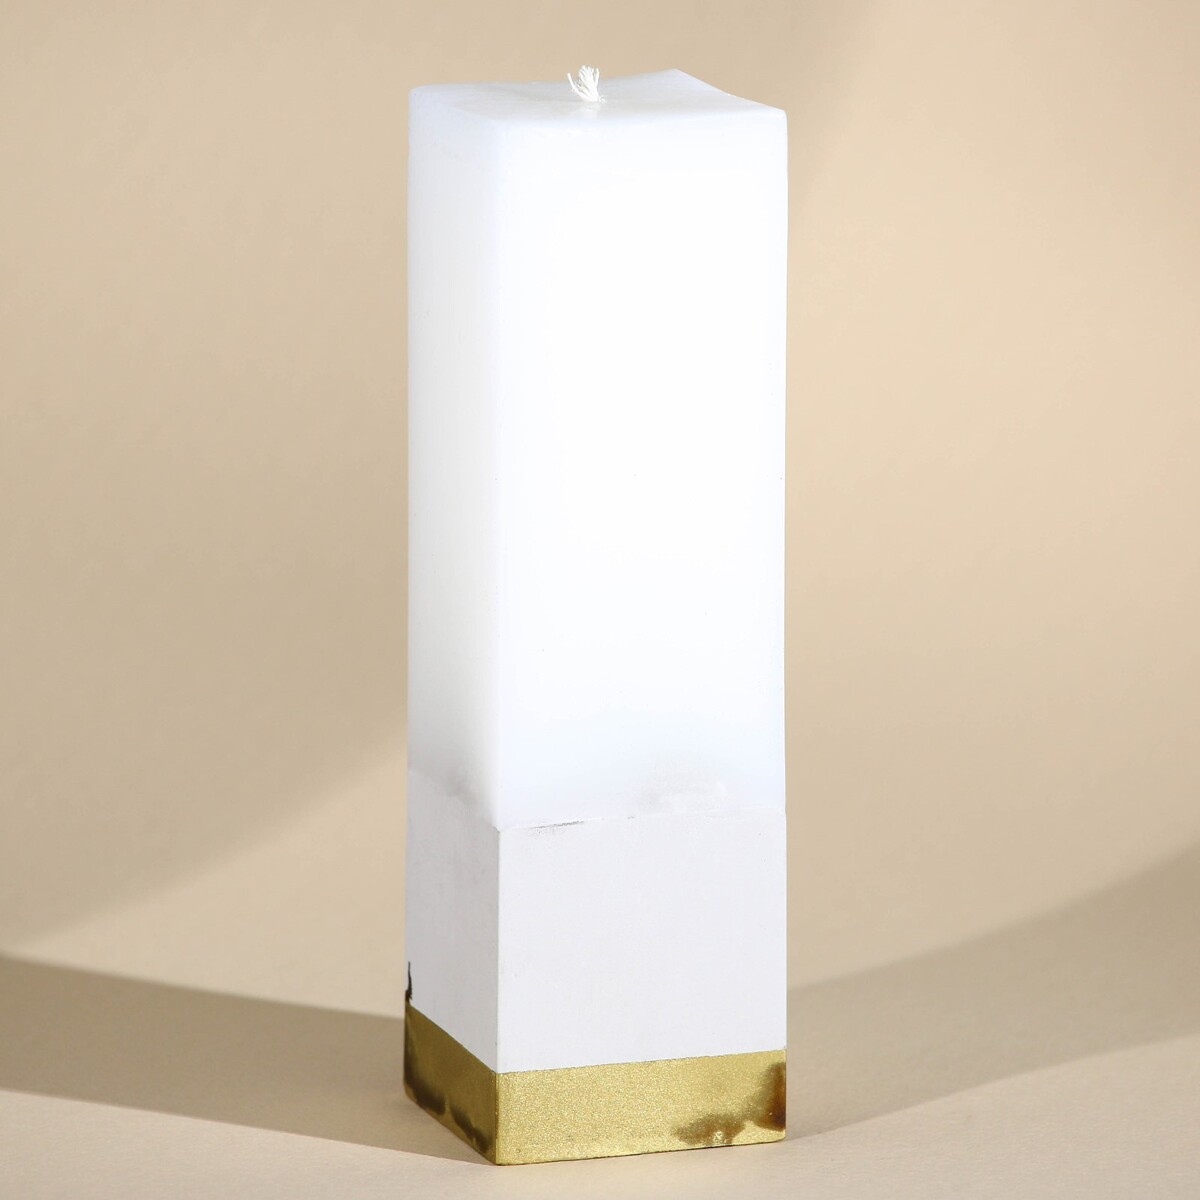 Свеча интерьерная белая с бетоном, низ золото, 5 х 5 х17,5 см свеча интерьерная женская фигура белая